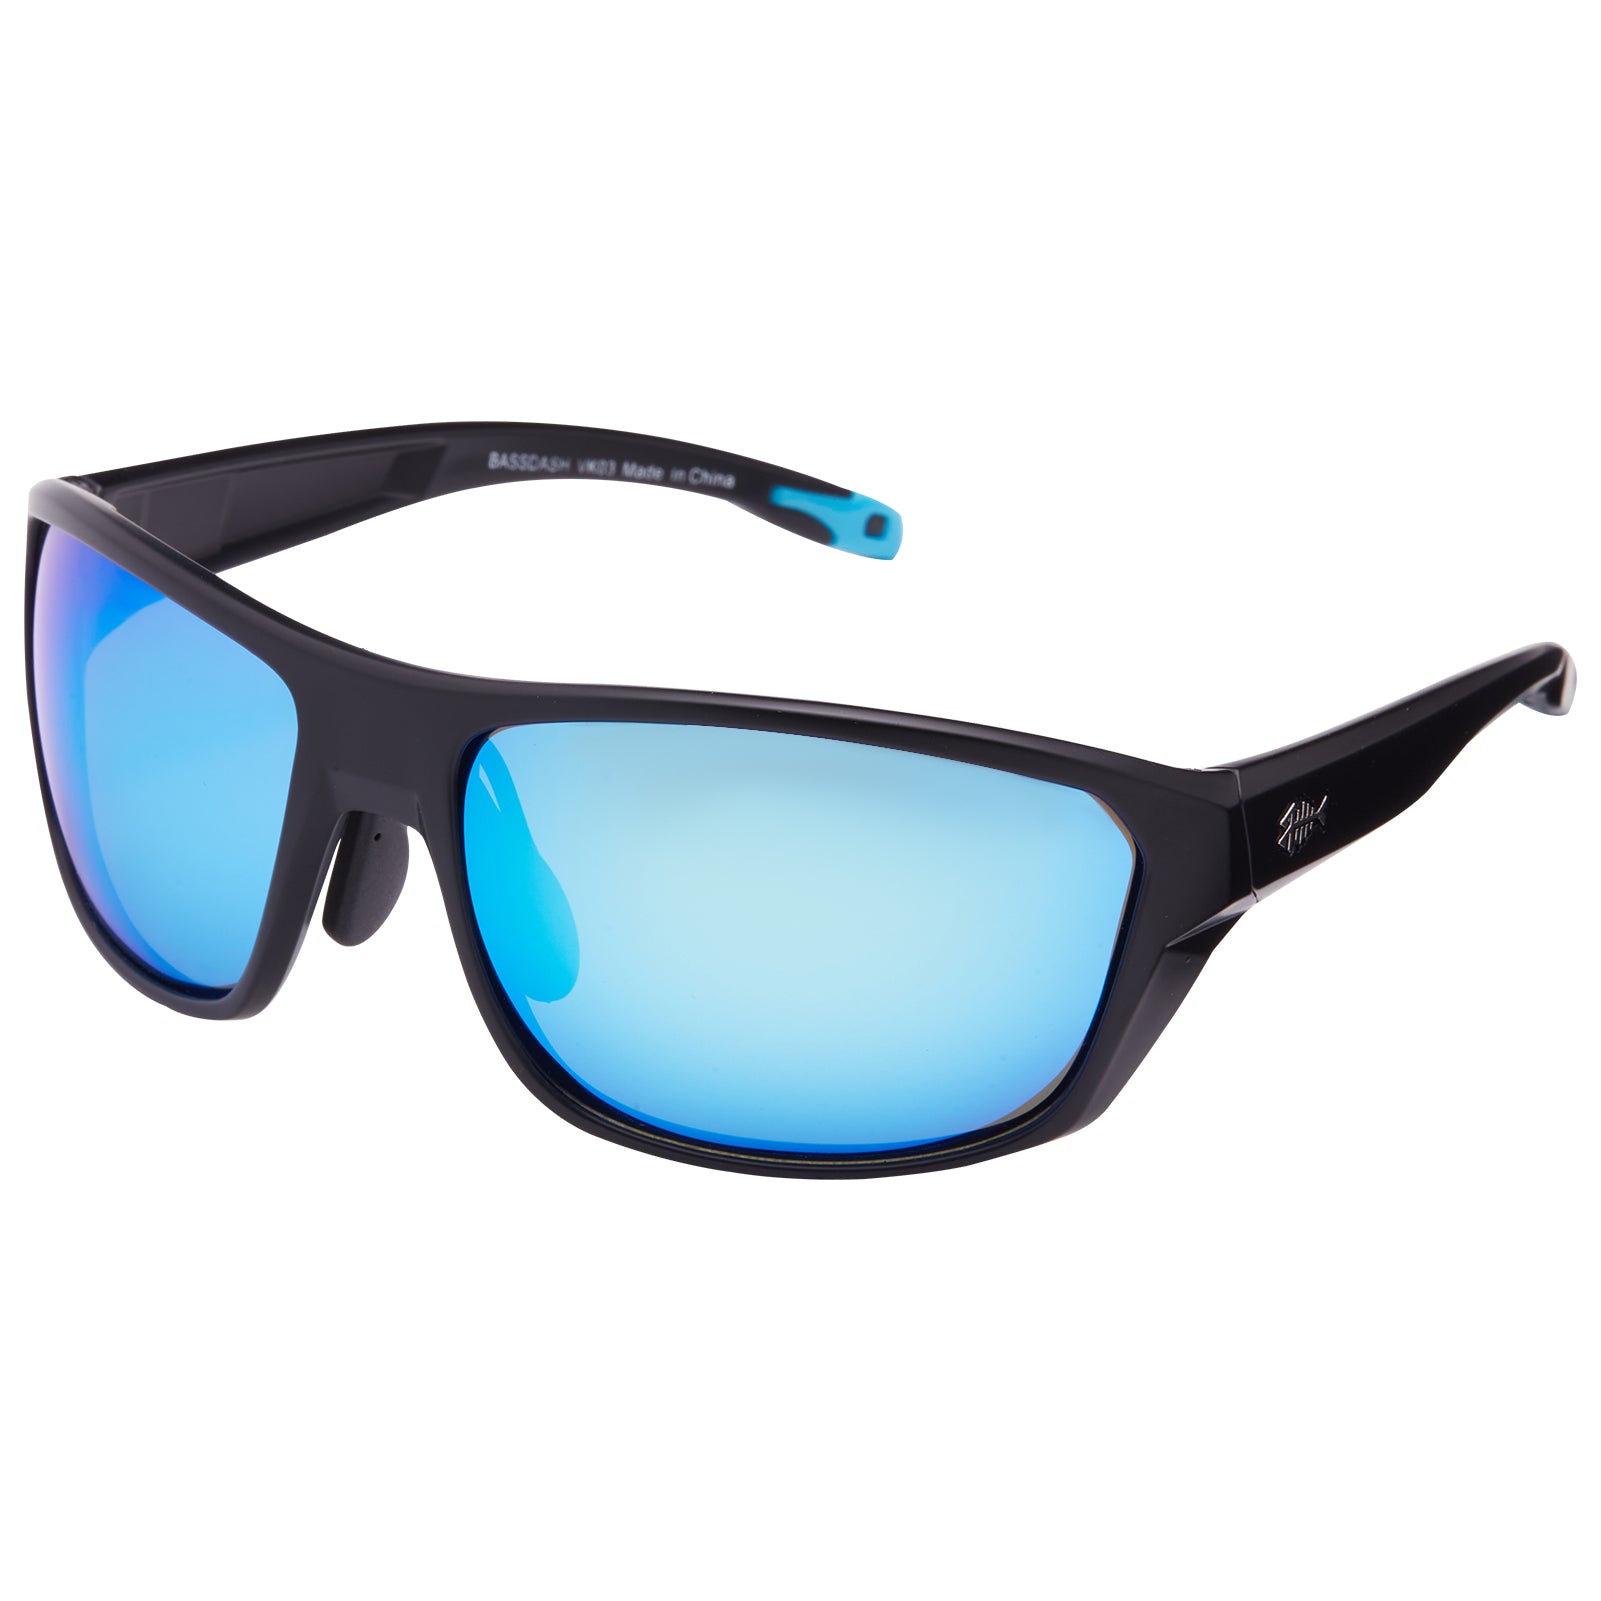 Polarized Fishing Sunglasses for Men Women | Bassdash Fishing Frame - Matte Black & Lens - Ice Blue Mirror